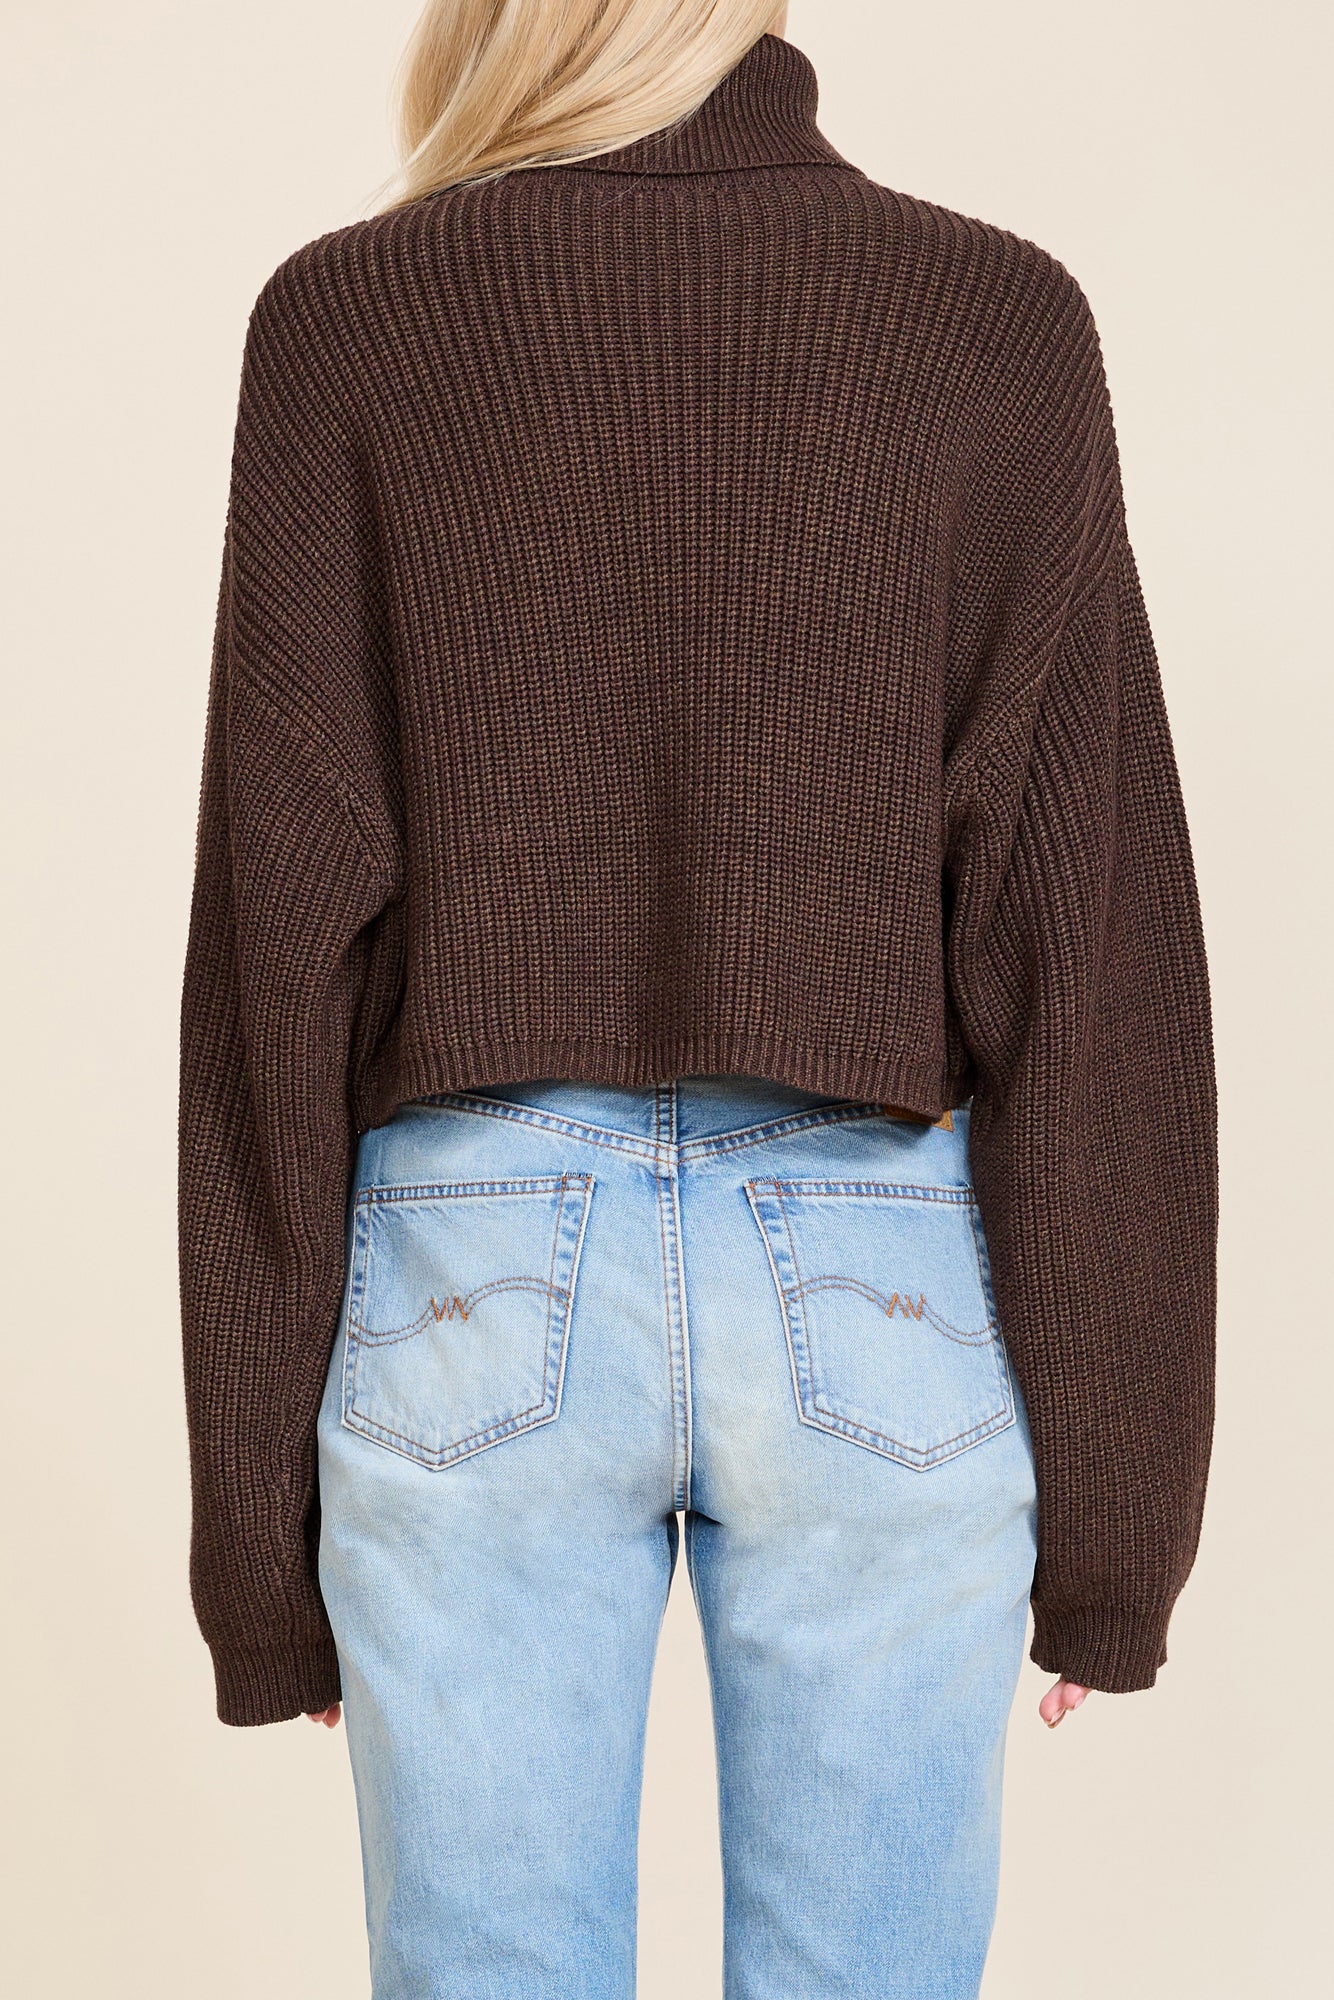 Cropped Turtleneck Sweater - Dark Heather Brown